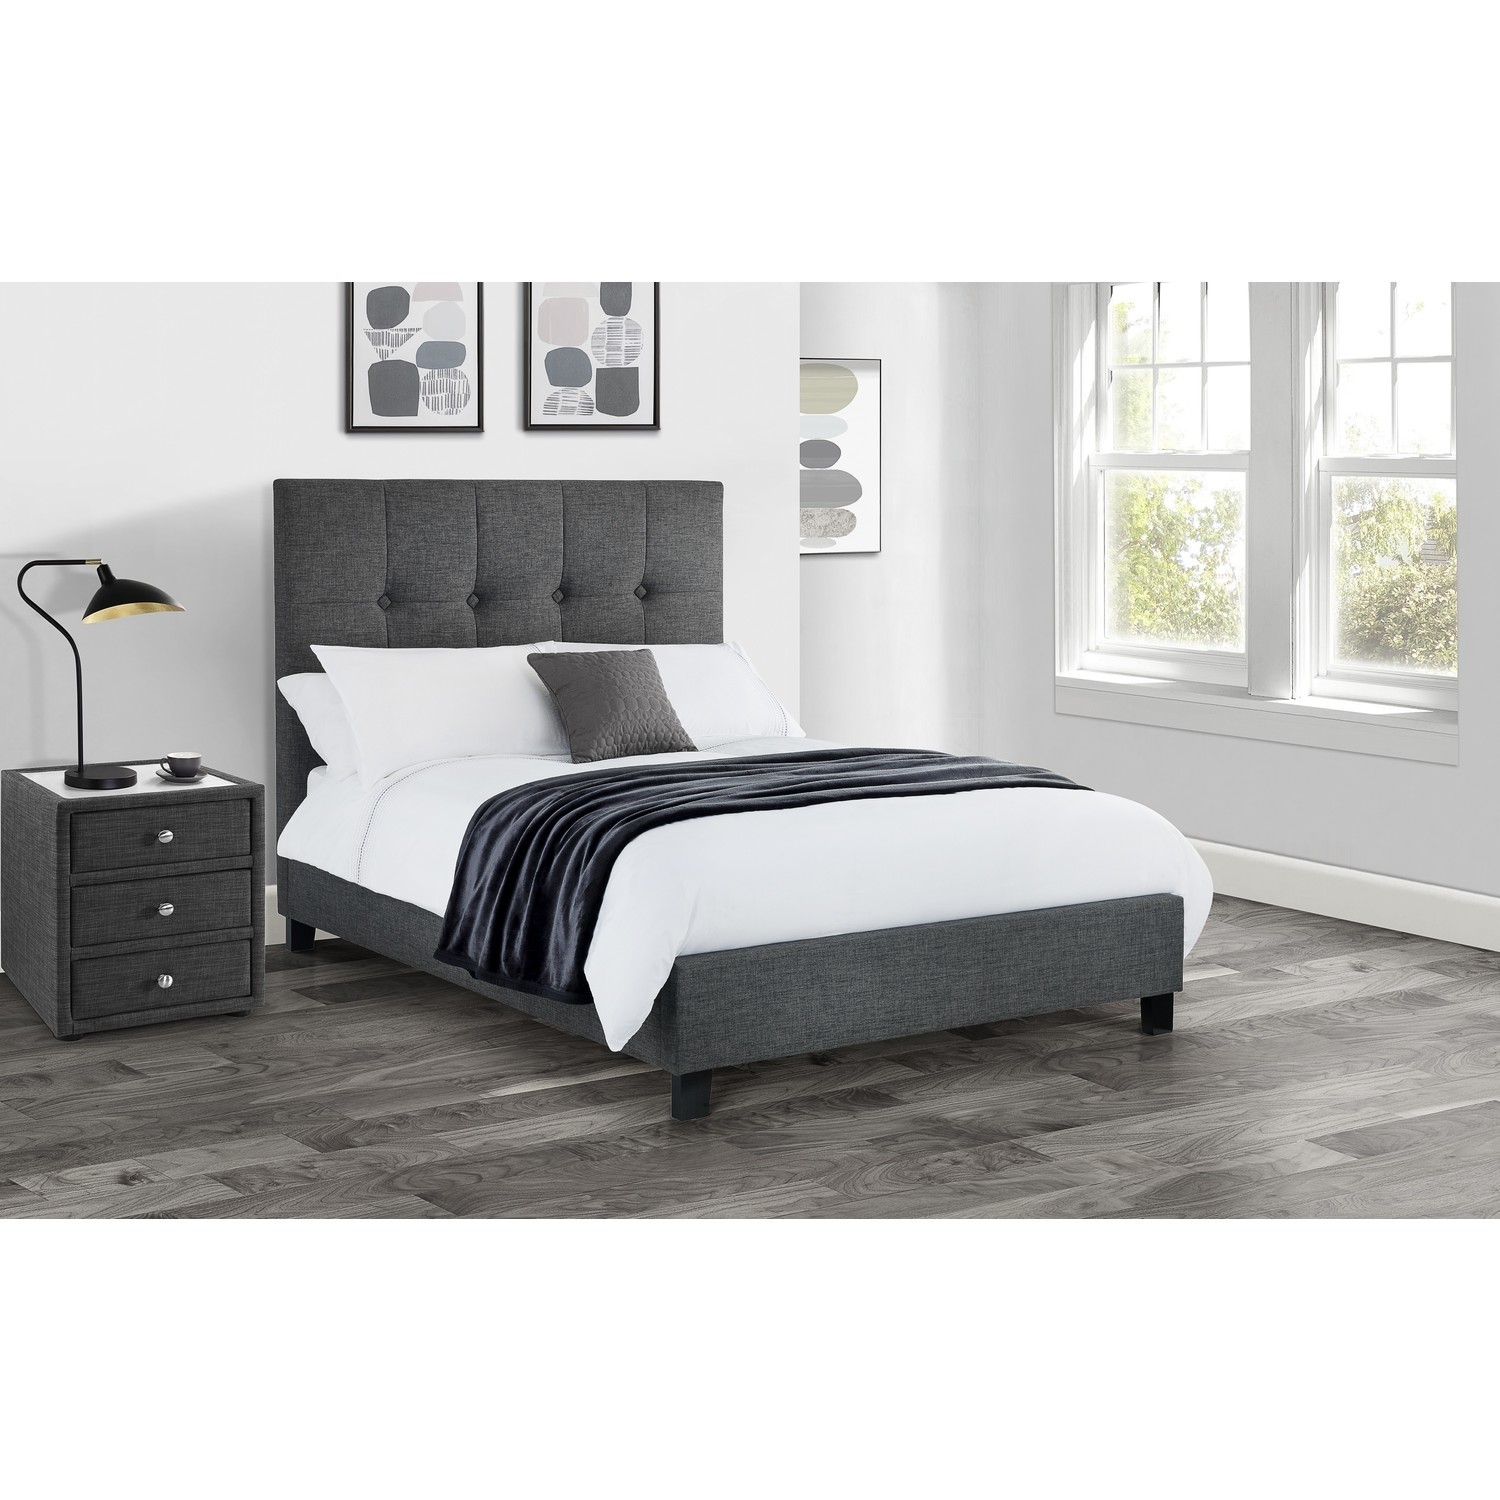 Dark Grey Super King Size Bed Frame, High King Size Bed Frame